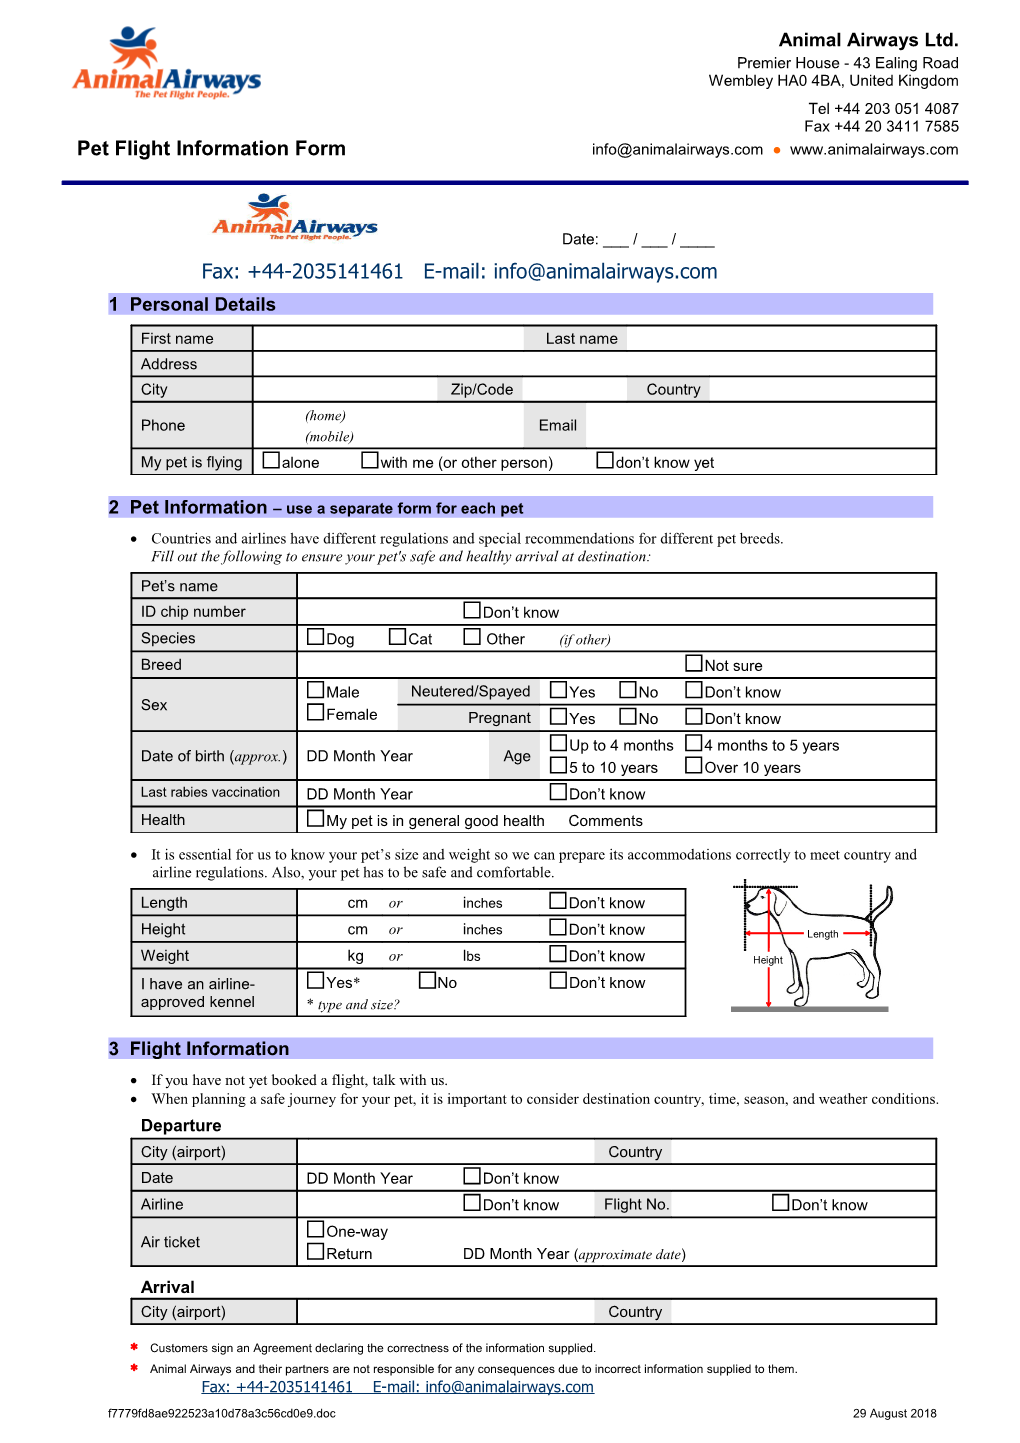 Pet Flight Information Form